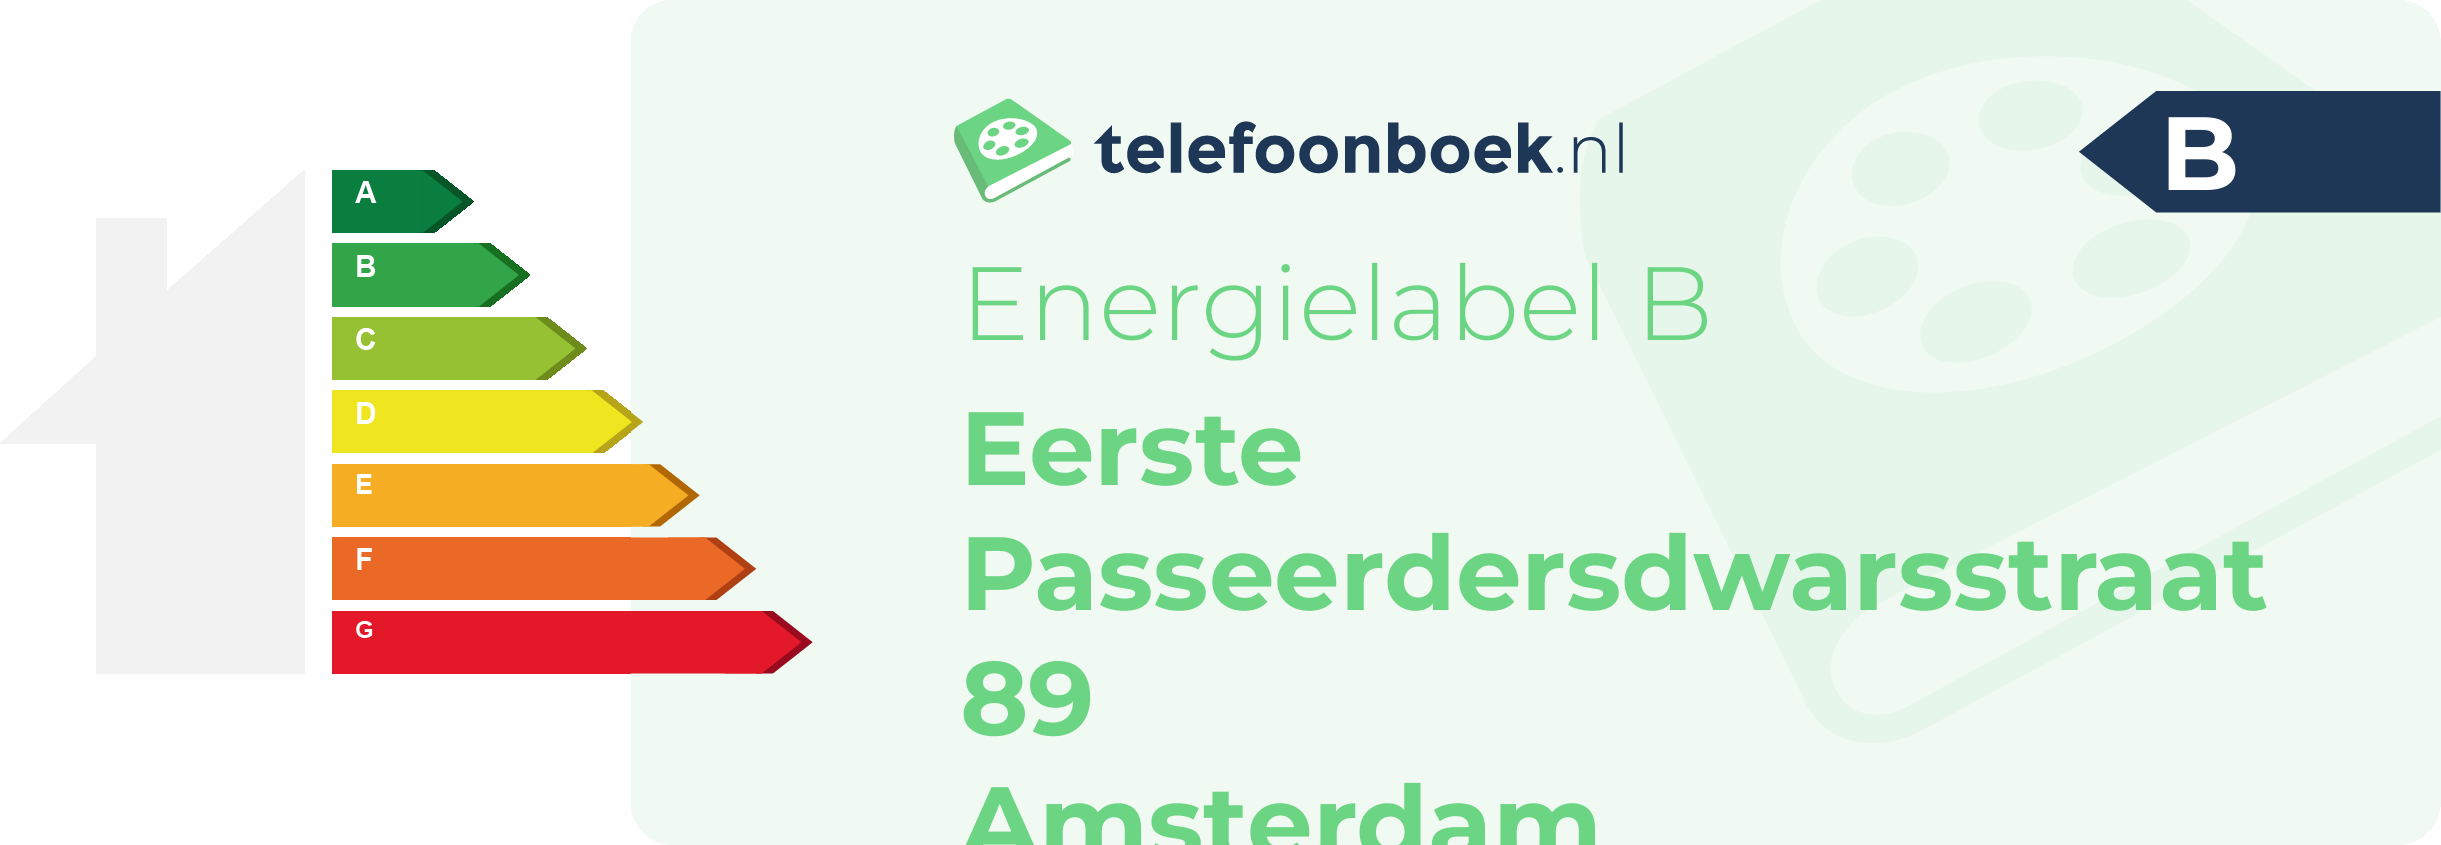 Energielabel Eerste Passeerdersdwarsstraat 89 Amsterdam